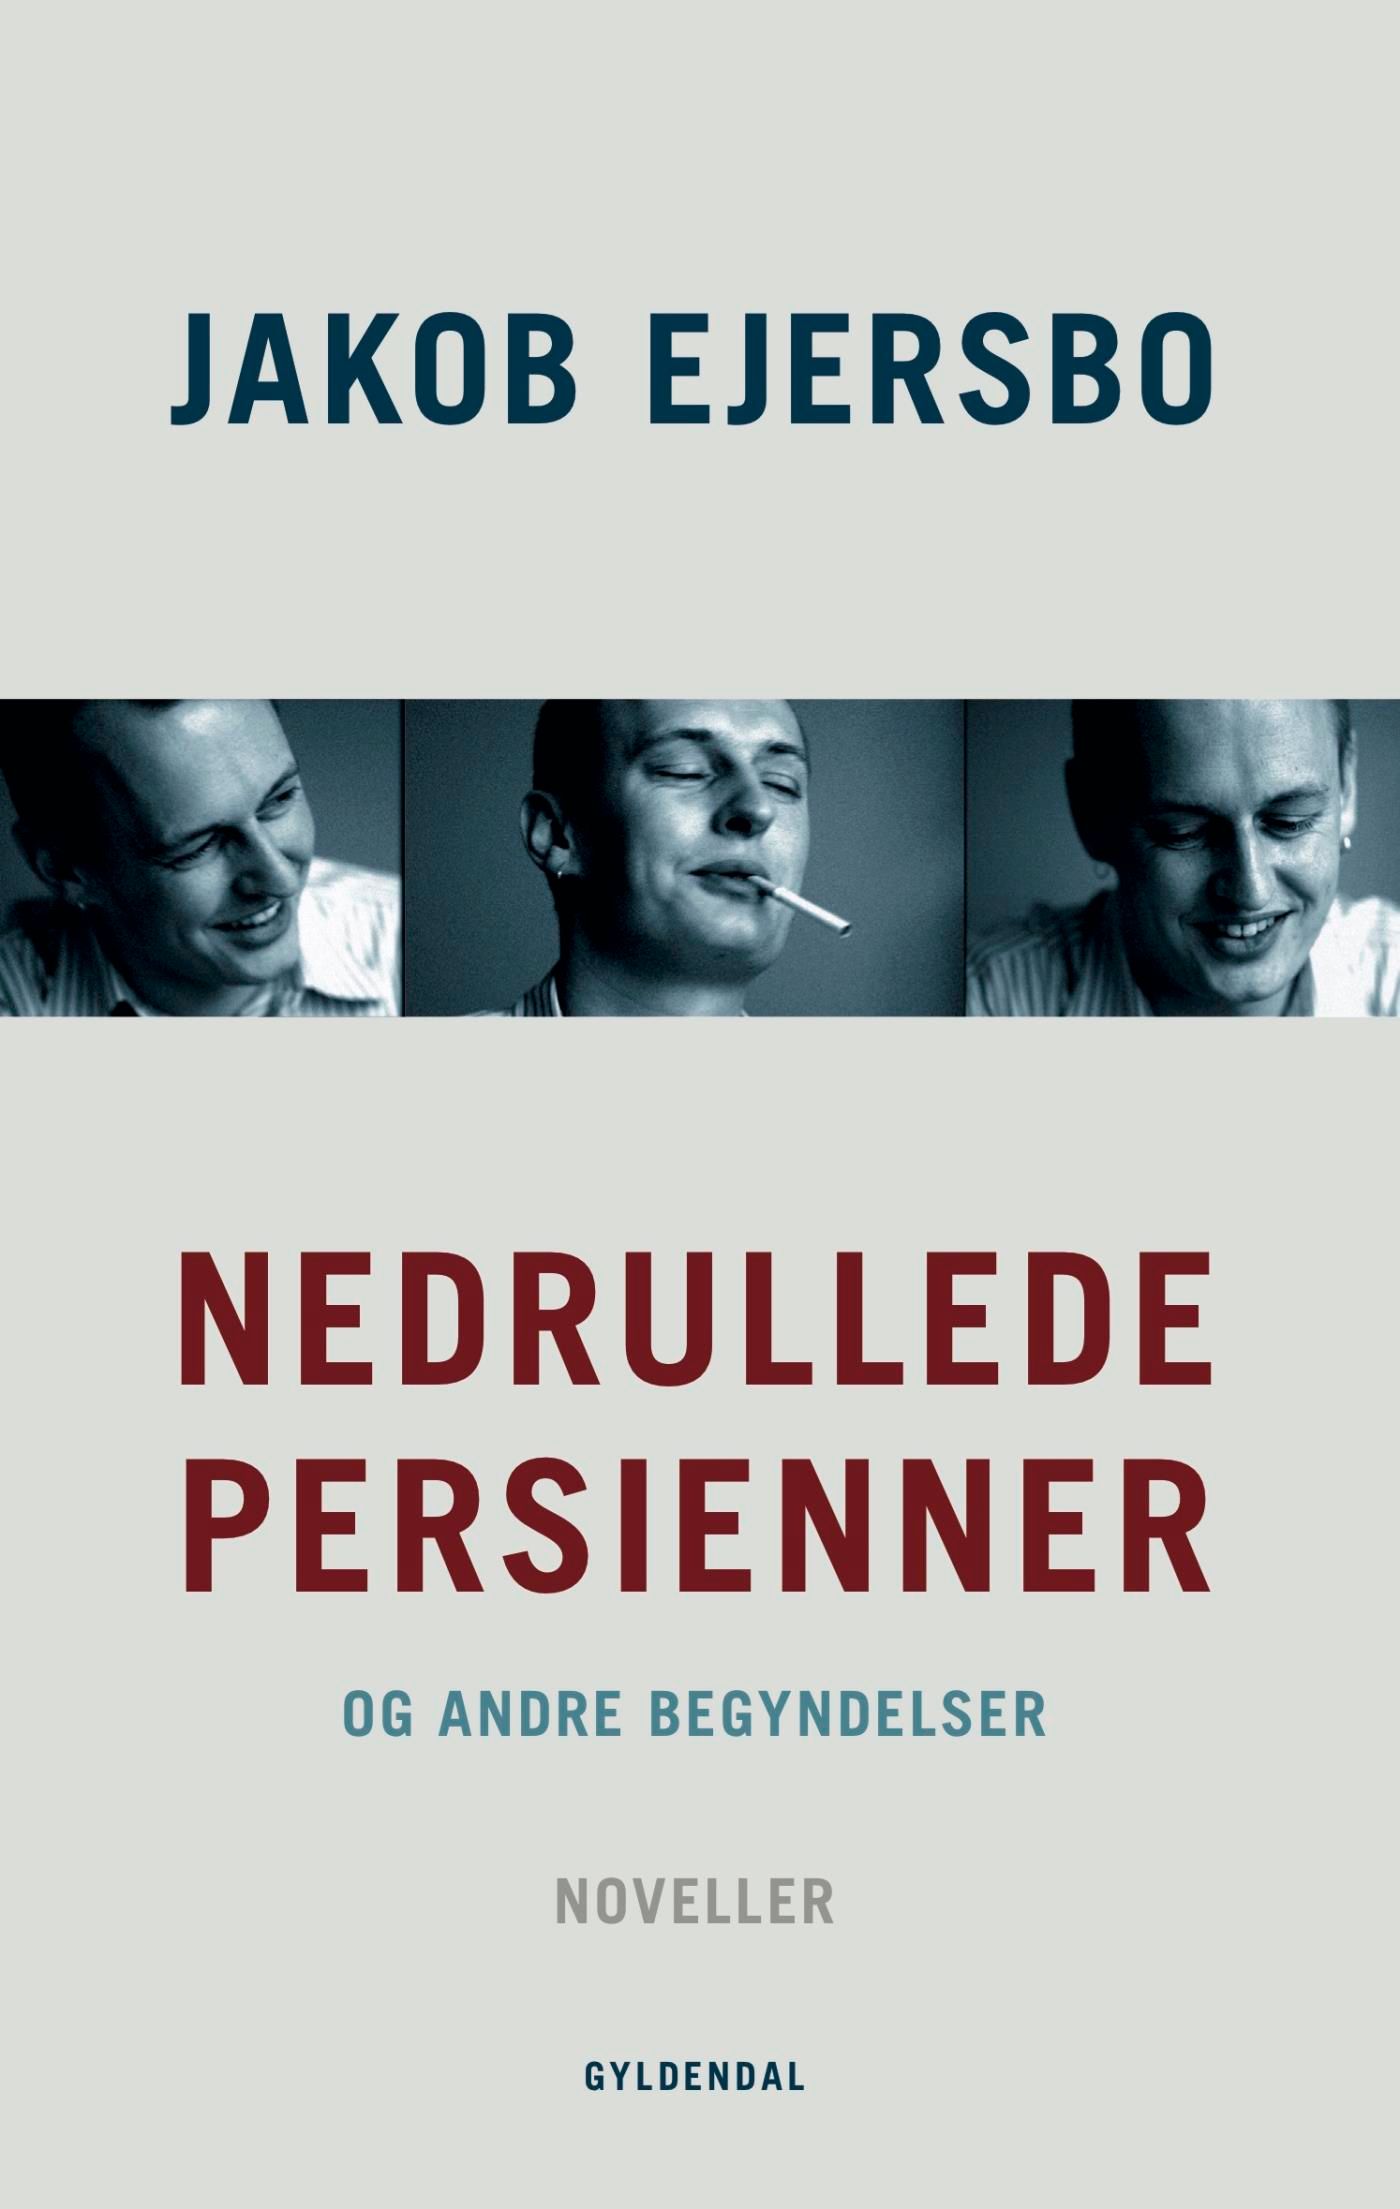 Nedrullede persienner, e-bok av Jakob Ejersbo